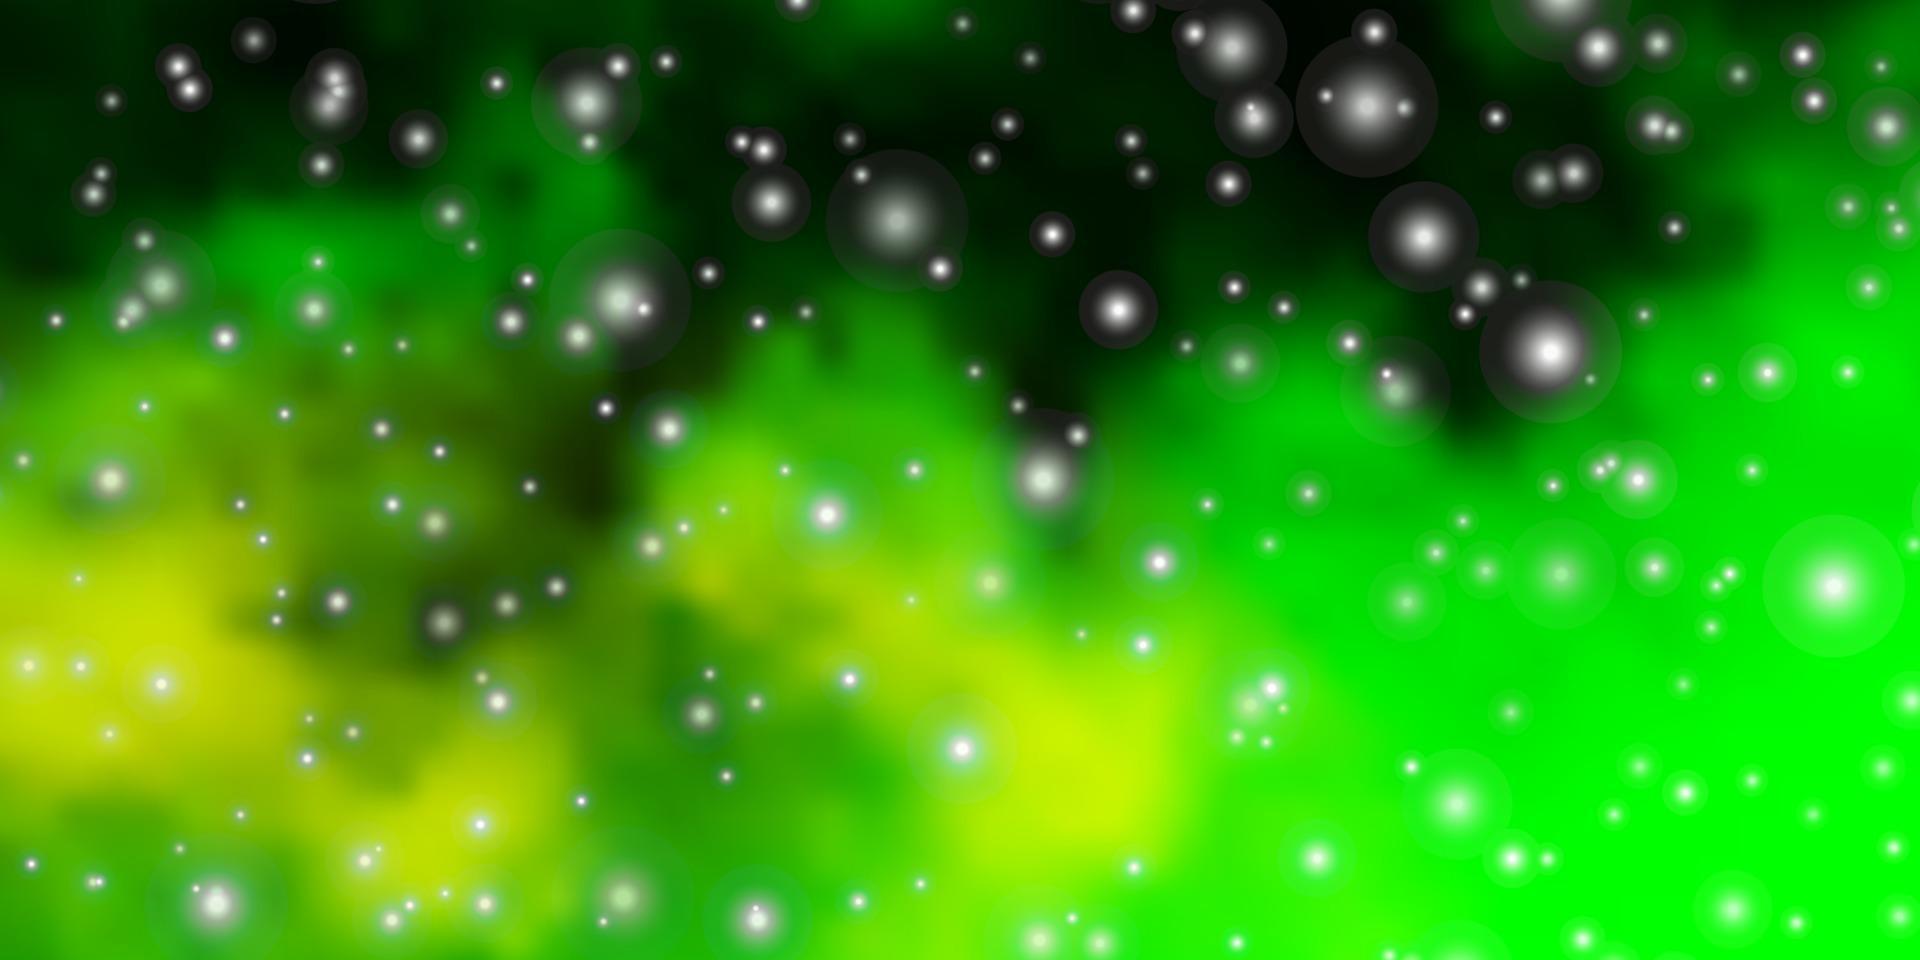 ljusgrön, gul vektorbakgrund med färgglada stjärnor. vektor